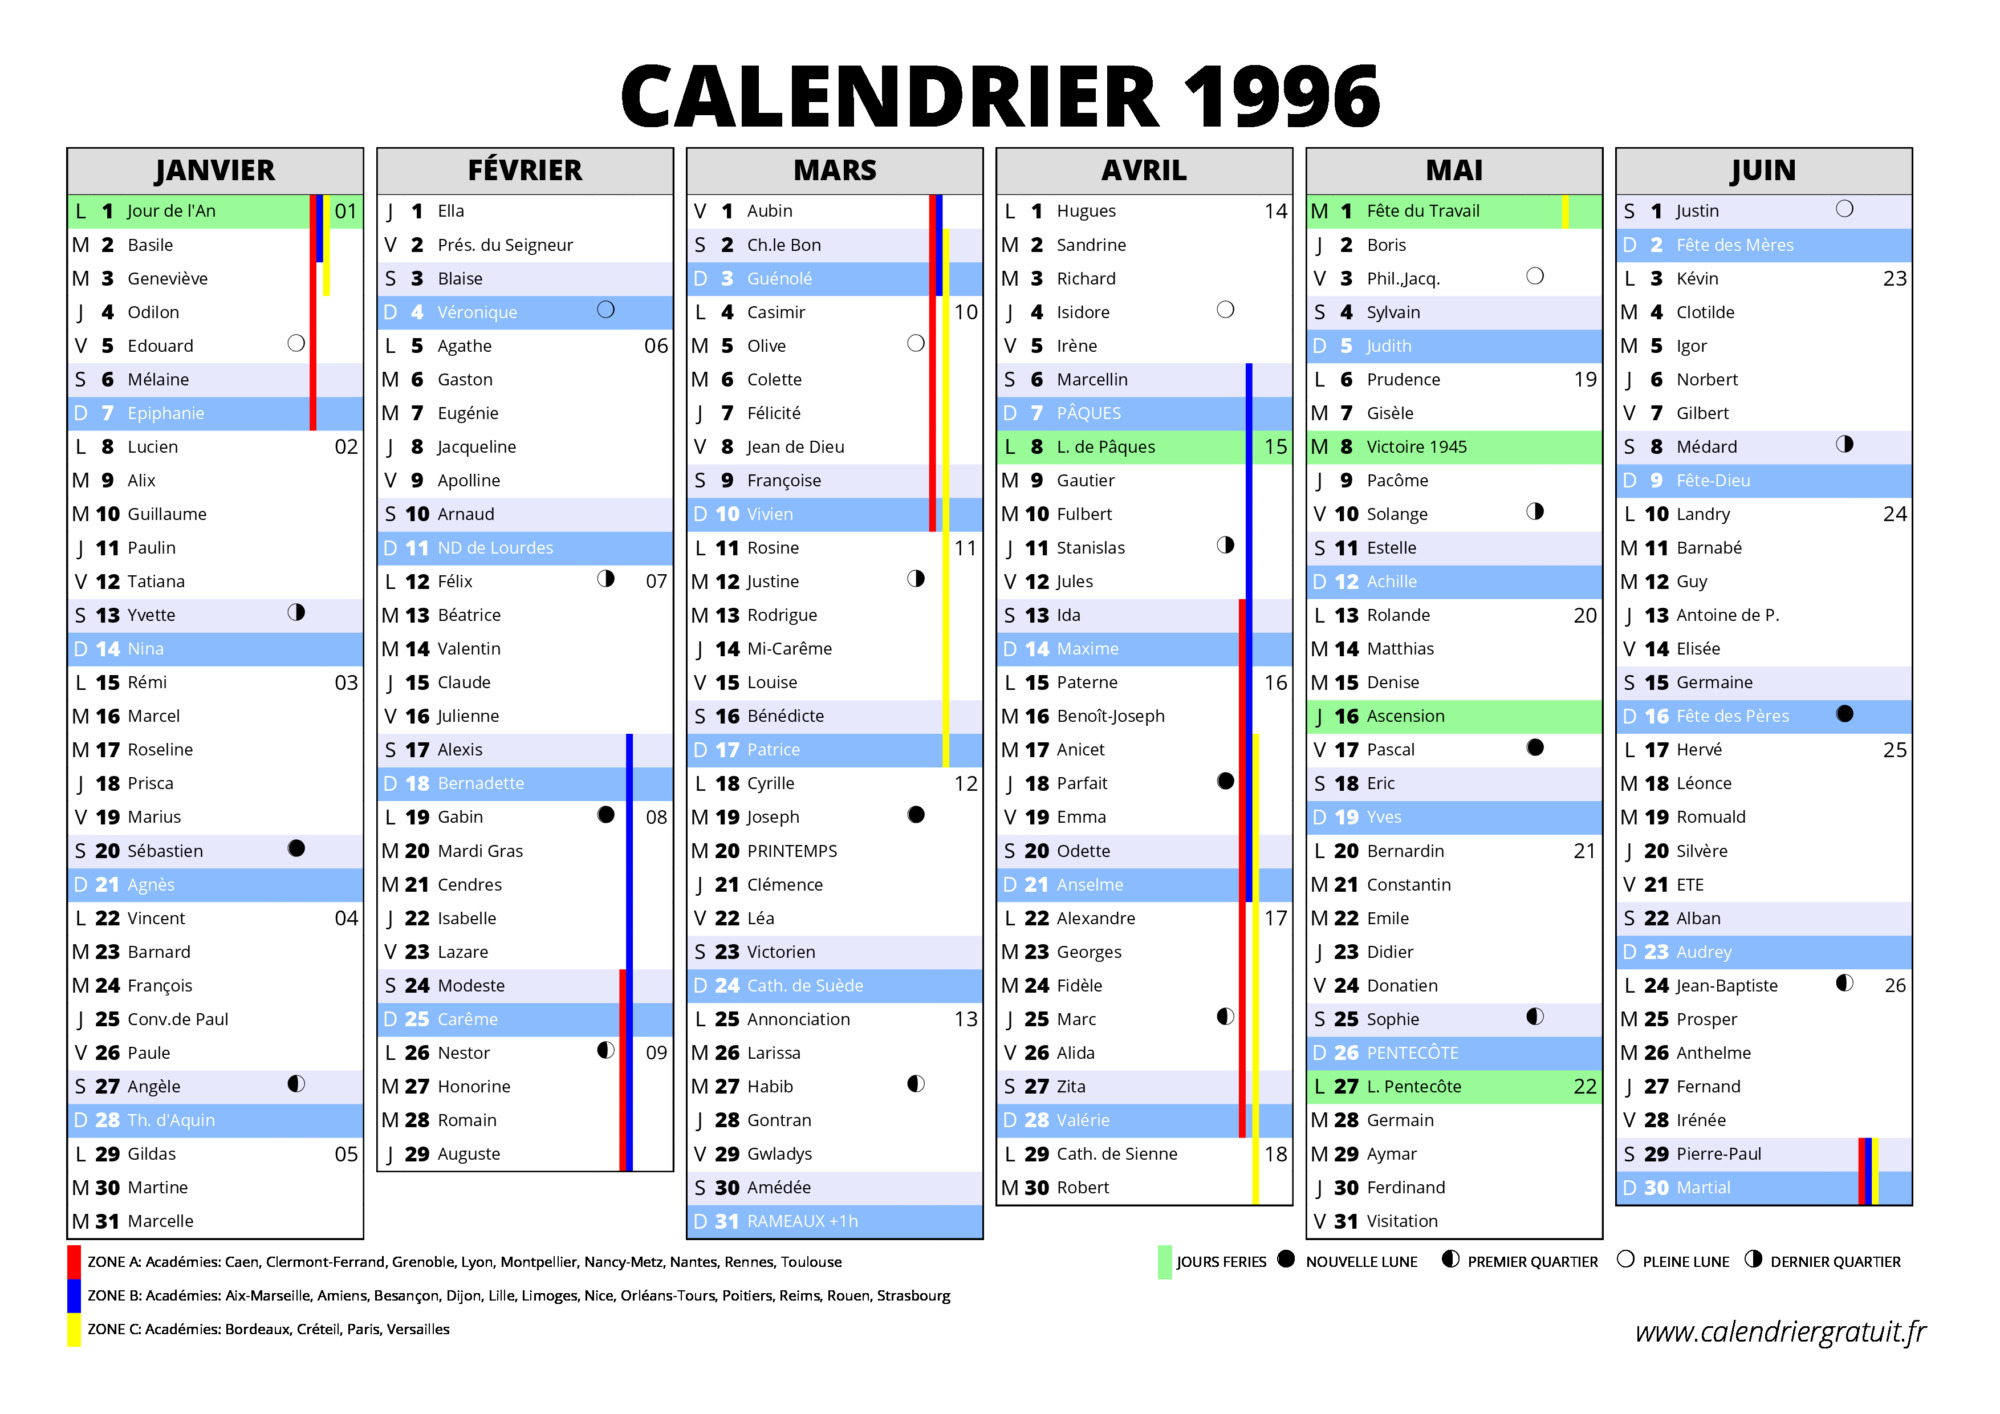 Pourquoi le calendrier de l'année 1996 se vend si cher sur internet ?